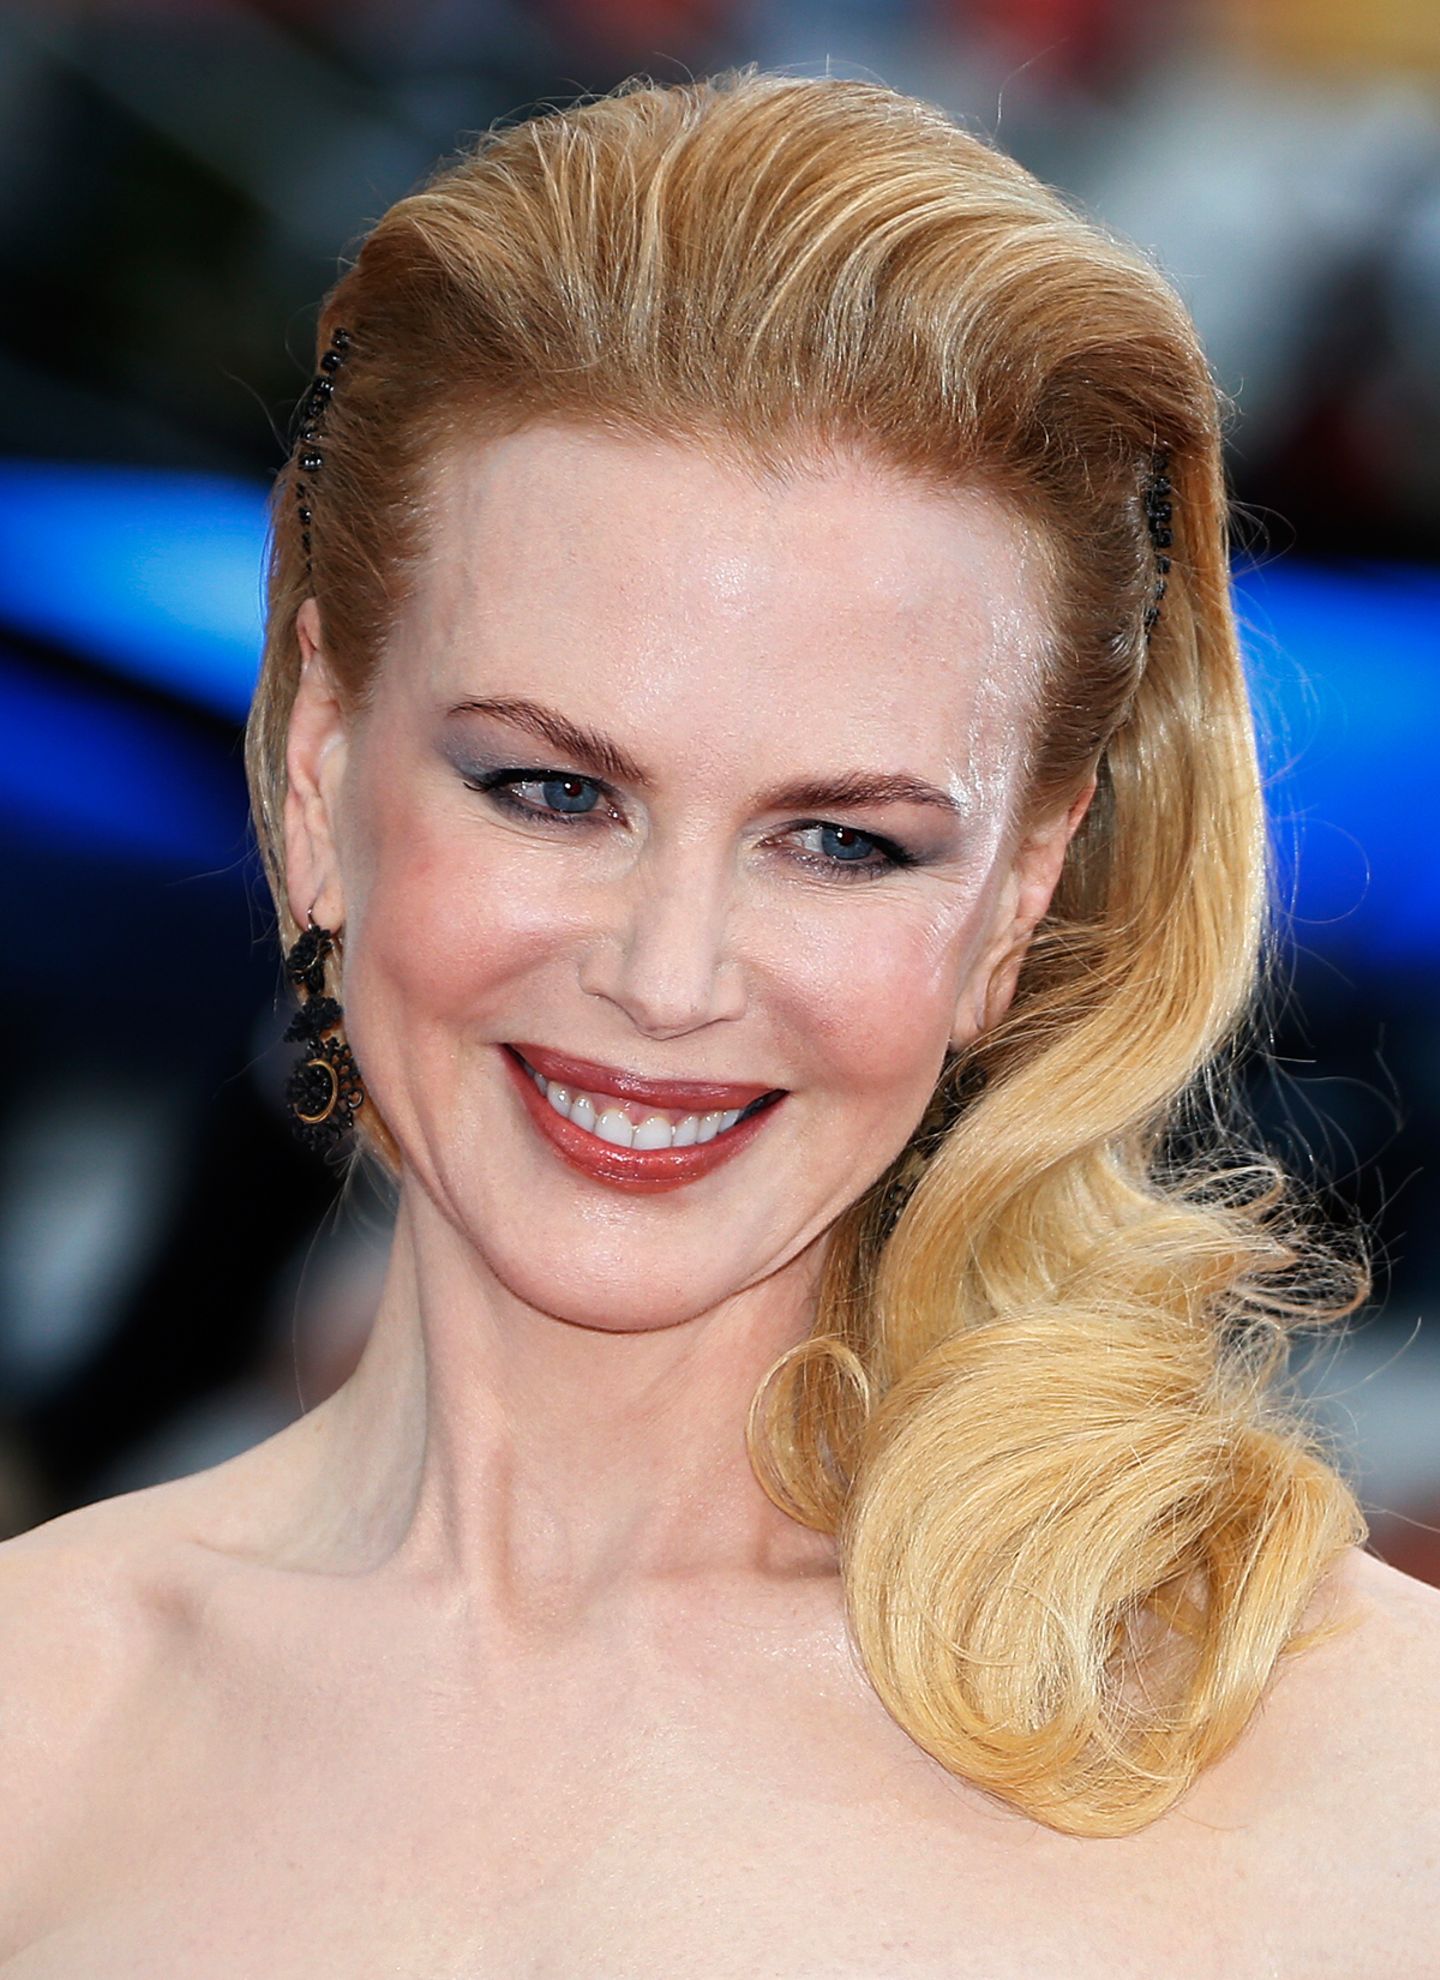 Nicole Kidman zählt dank ihrer traumhaften Roben und eleganten Beauty-Looks zu einer der Stilikonen Hollywoods. Ihre antoupierte und in den Spitzen gelockte Frisur trägt dazu bei.